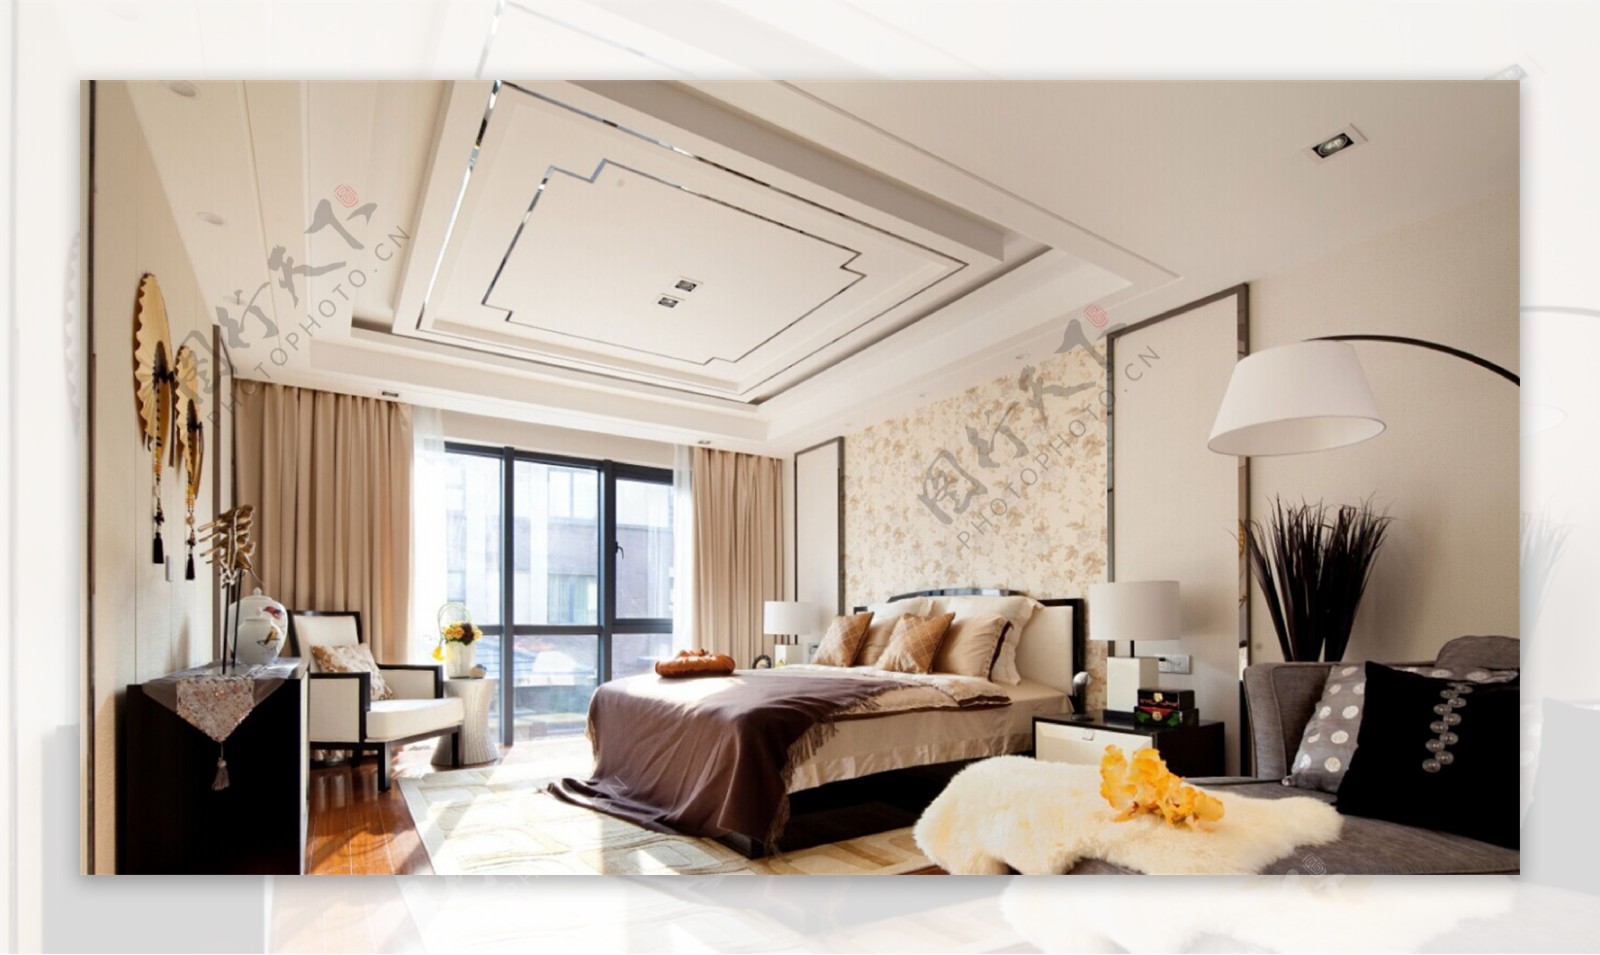 新中式时尚卧室大床落地窗设计图